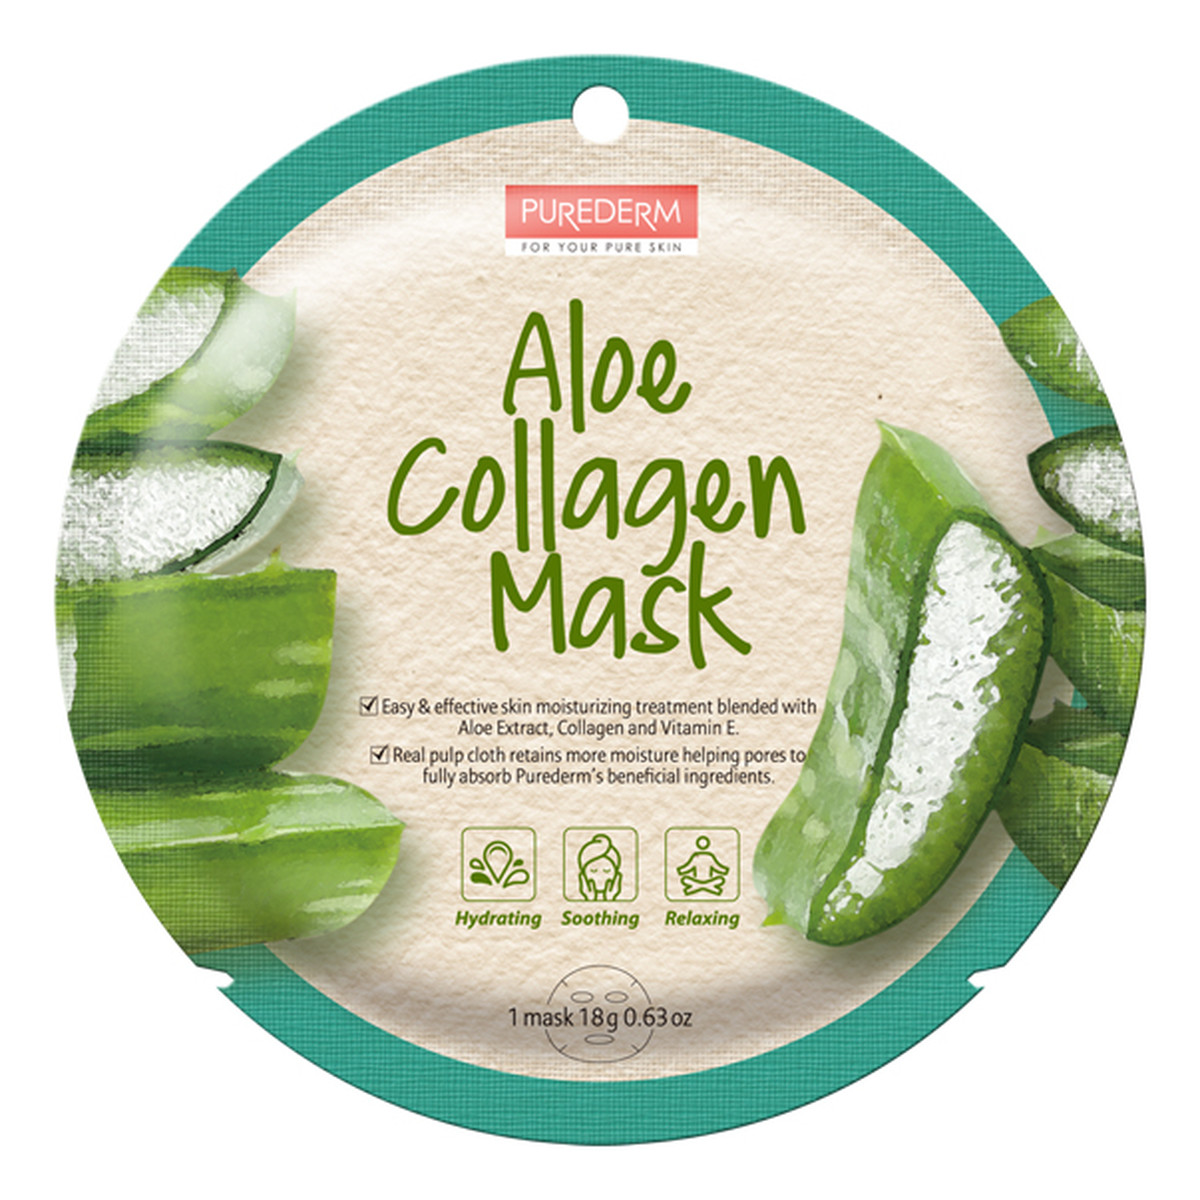 Purederm Aloe Collagen Mask maseczka kolagenowa w płacie Aloes 18g